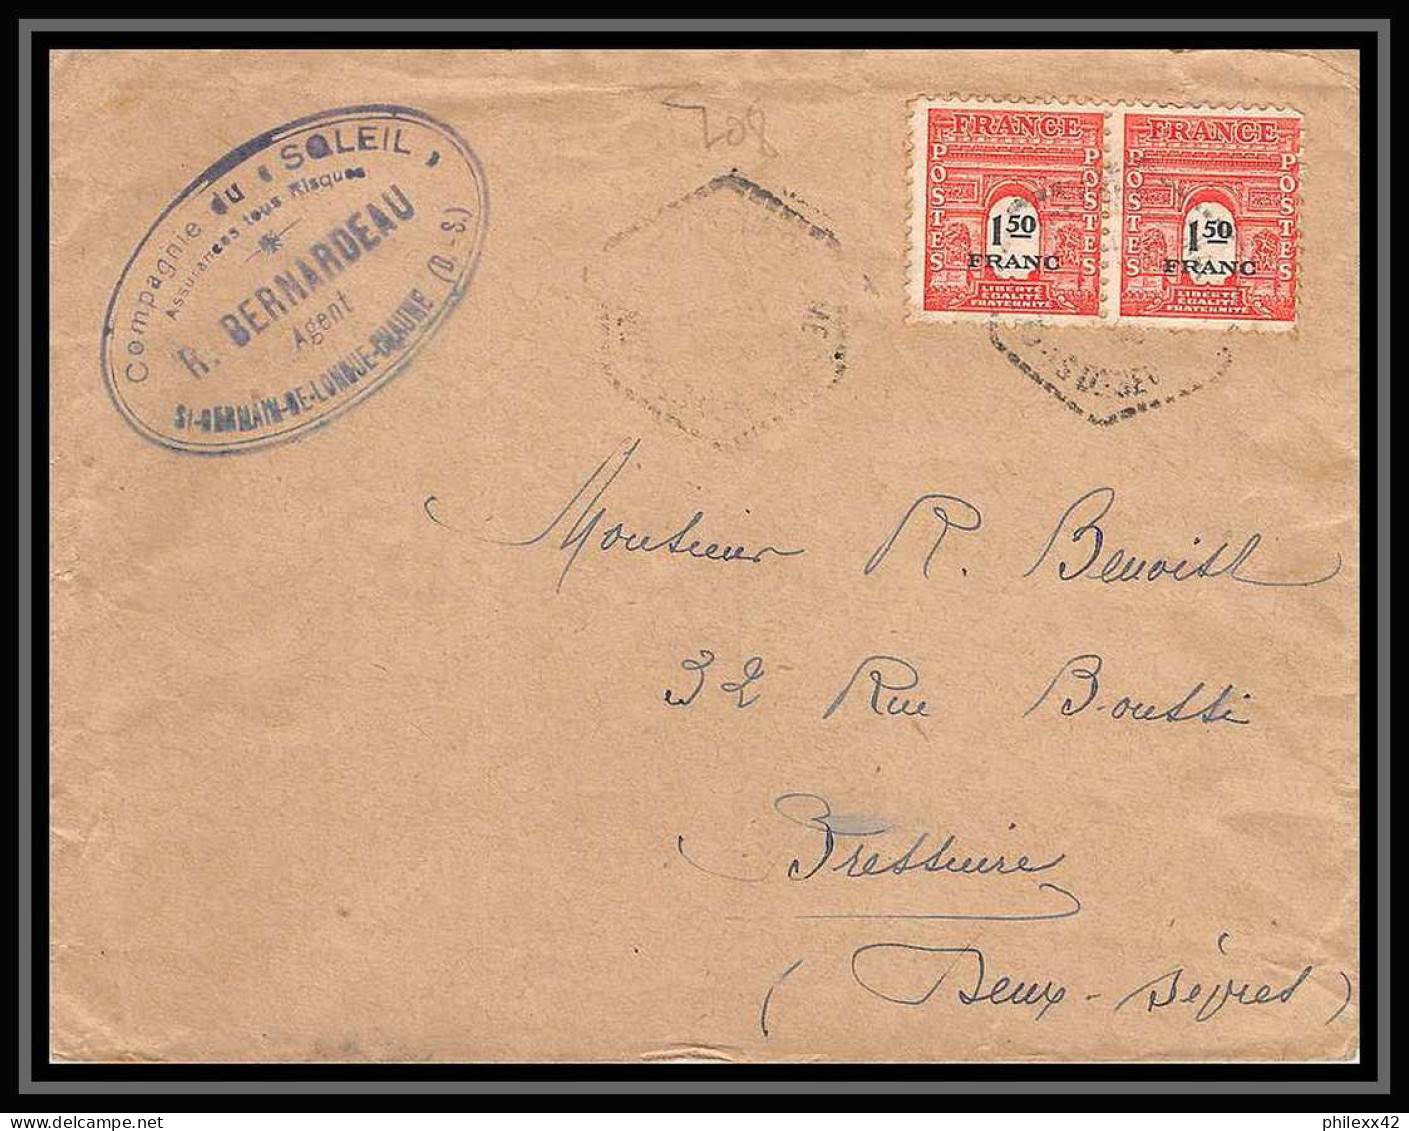 2589 France N°708 Arc De Triomphe Saint Germain De Longue Chaume Pour Bressuire Lettre (cover) - 1944-45 Arc Of Triomphe